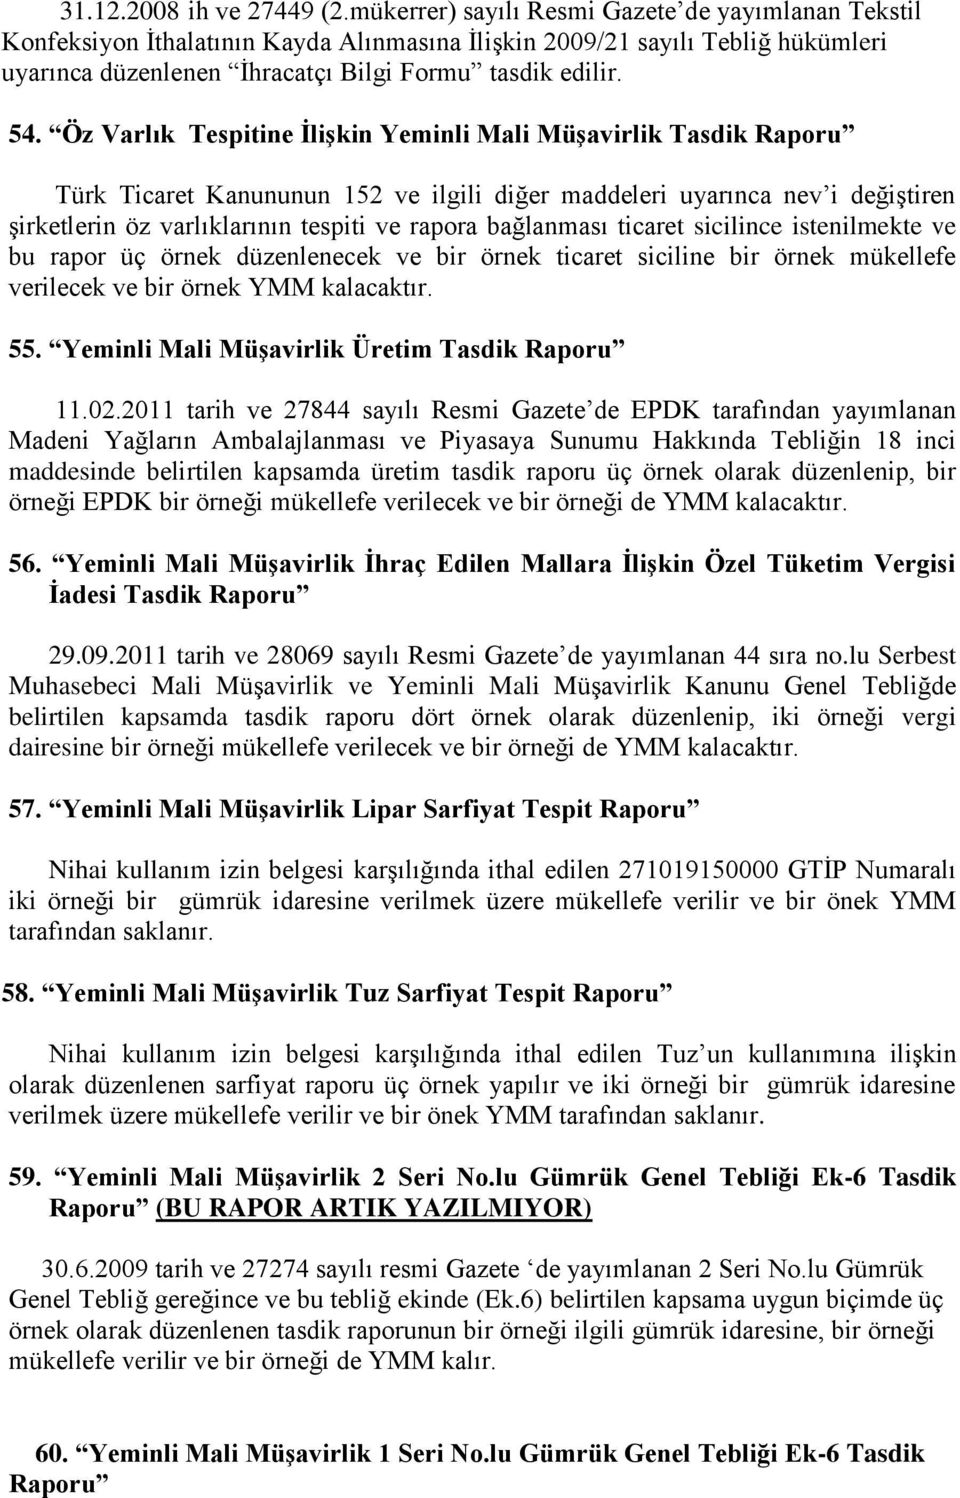 Öz Varlık Tespitine İlişkin Yeminli Mali Müşavirlik Tasdik Raporu Türk Ticaret Kanununun 152 ve ilgili diğer maddeleri uyarınca nev i değiştiren şirketlerin öz varlıklarının tespiti ve rapora